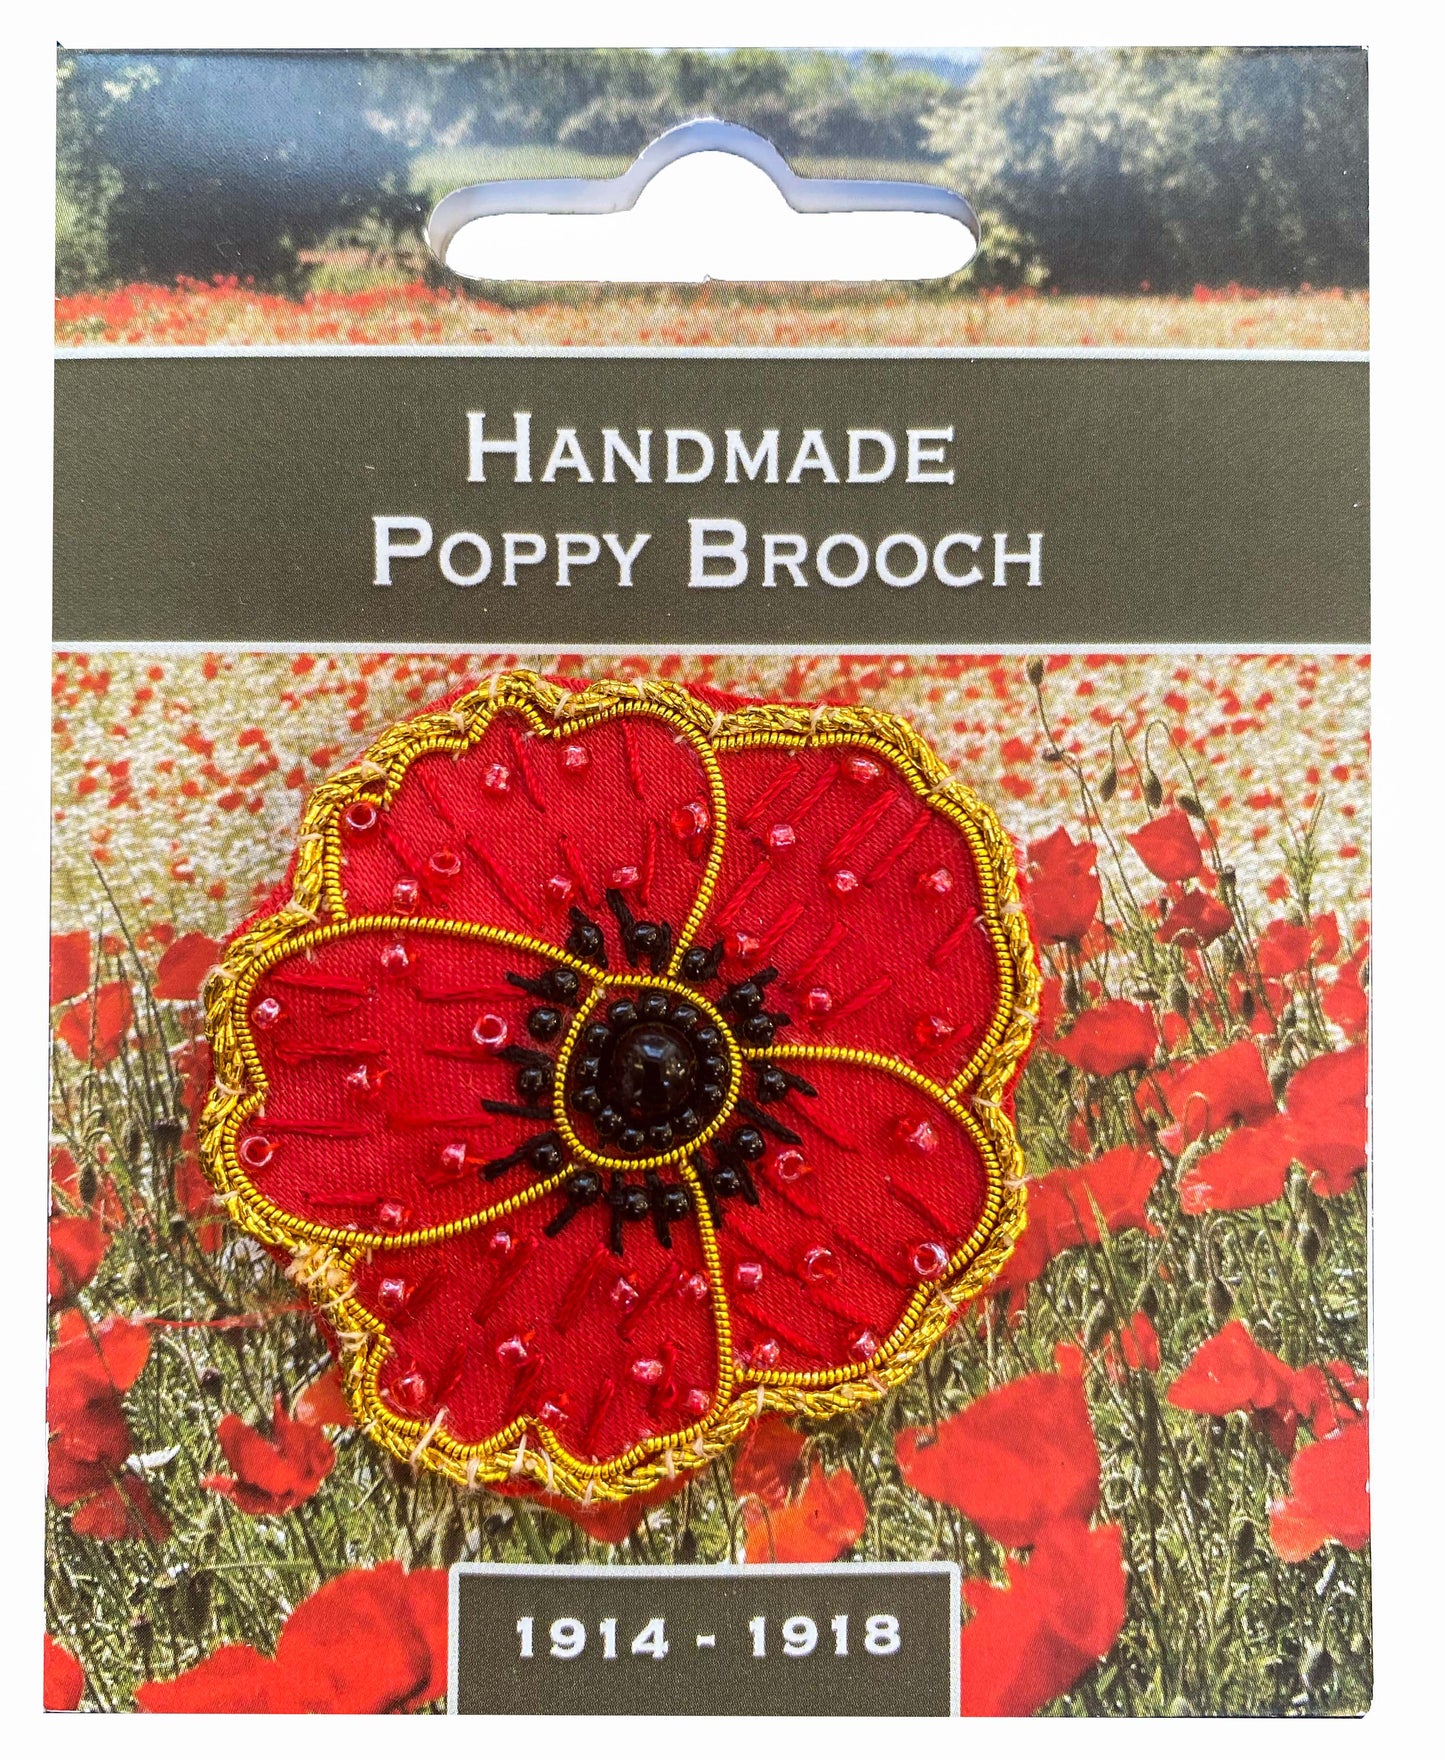 Handmade Poppy Brooch